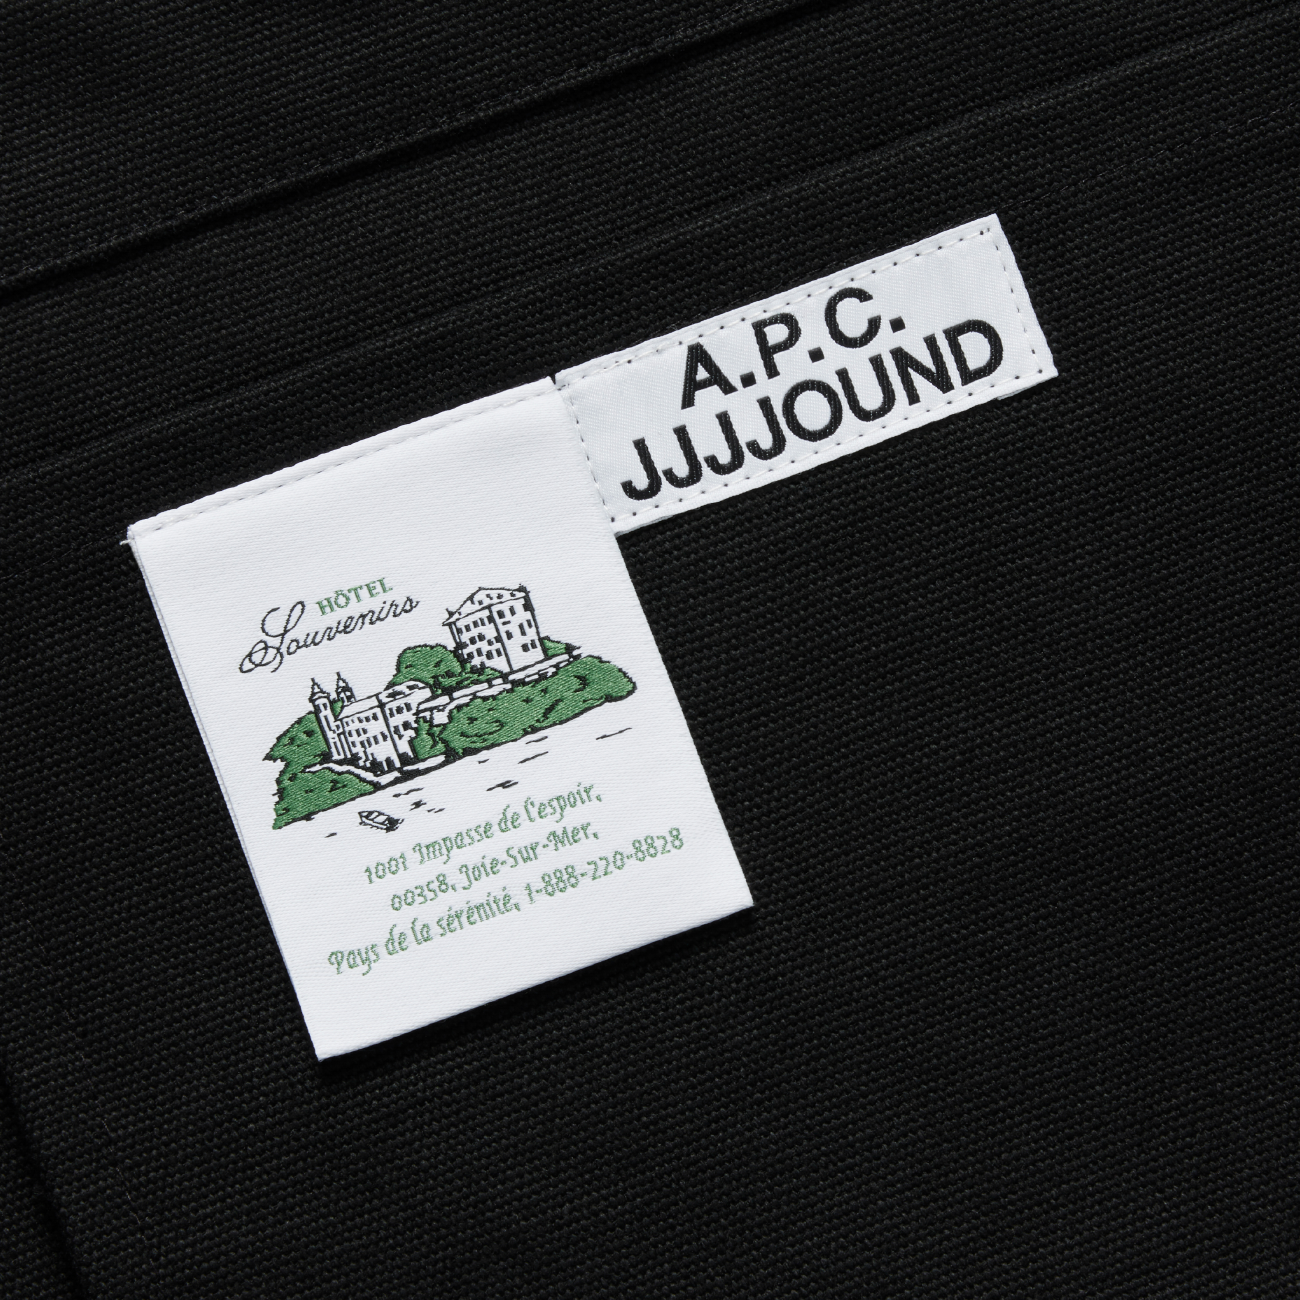 A.P.C. x JJJJound Tote Bag - Noir